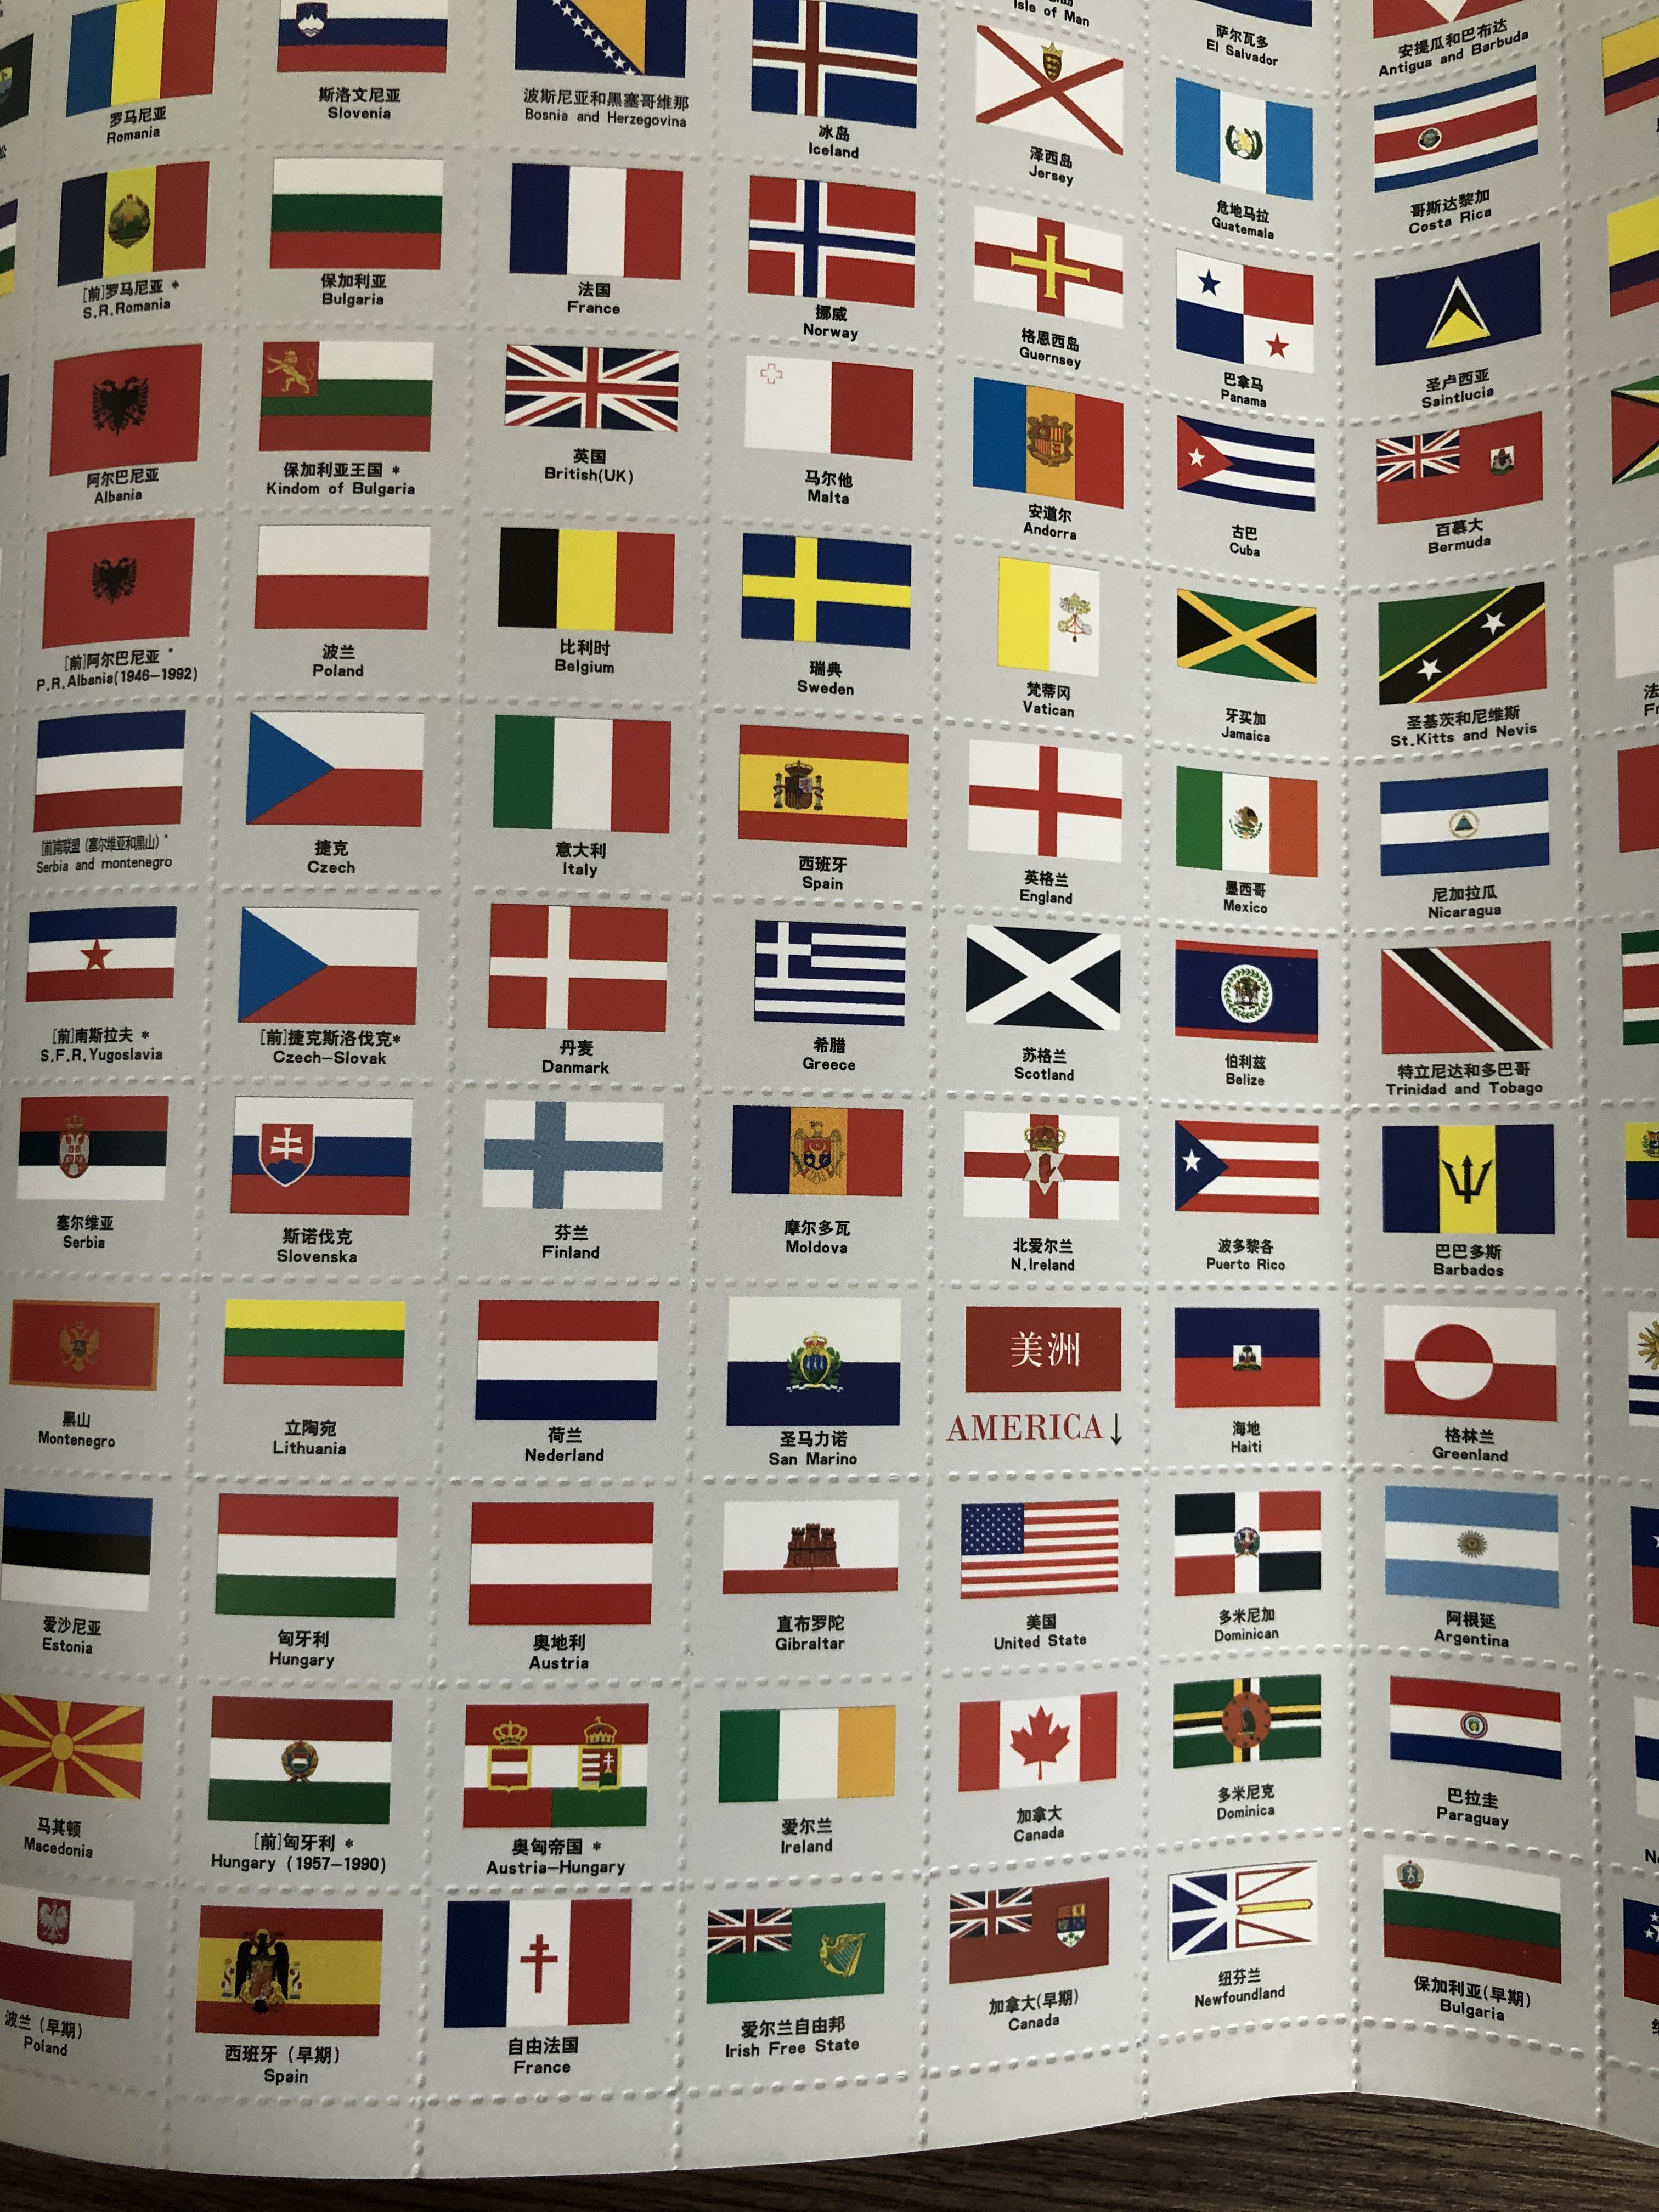 Cờ các nước:
Mỗi quốc gia đều có cờ riêng biệt, mặc dù có dạng gần giống nhau nhưng đều mang ý nghĩa khác nhau. Bạn có thể xem hình ảnh về các cờ quốc gia trên thế giới để tìm hiểu thêm về các nền văn hóa và truyền thống của các quốc gia.